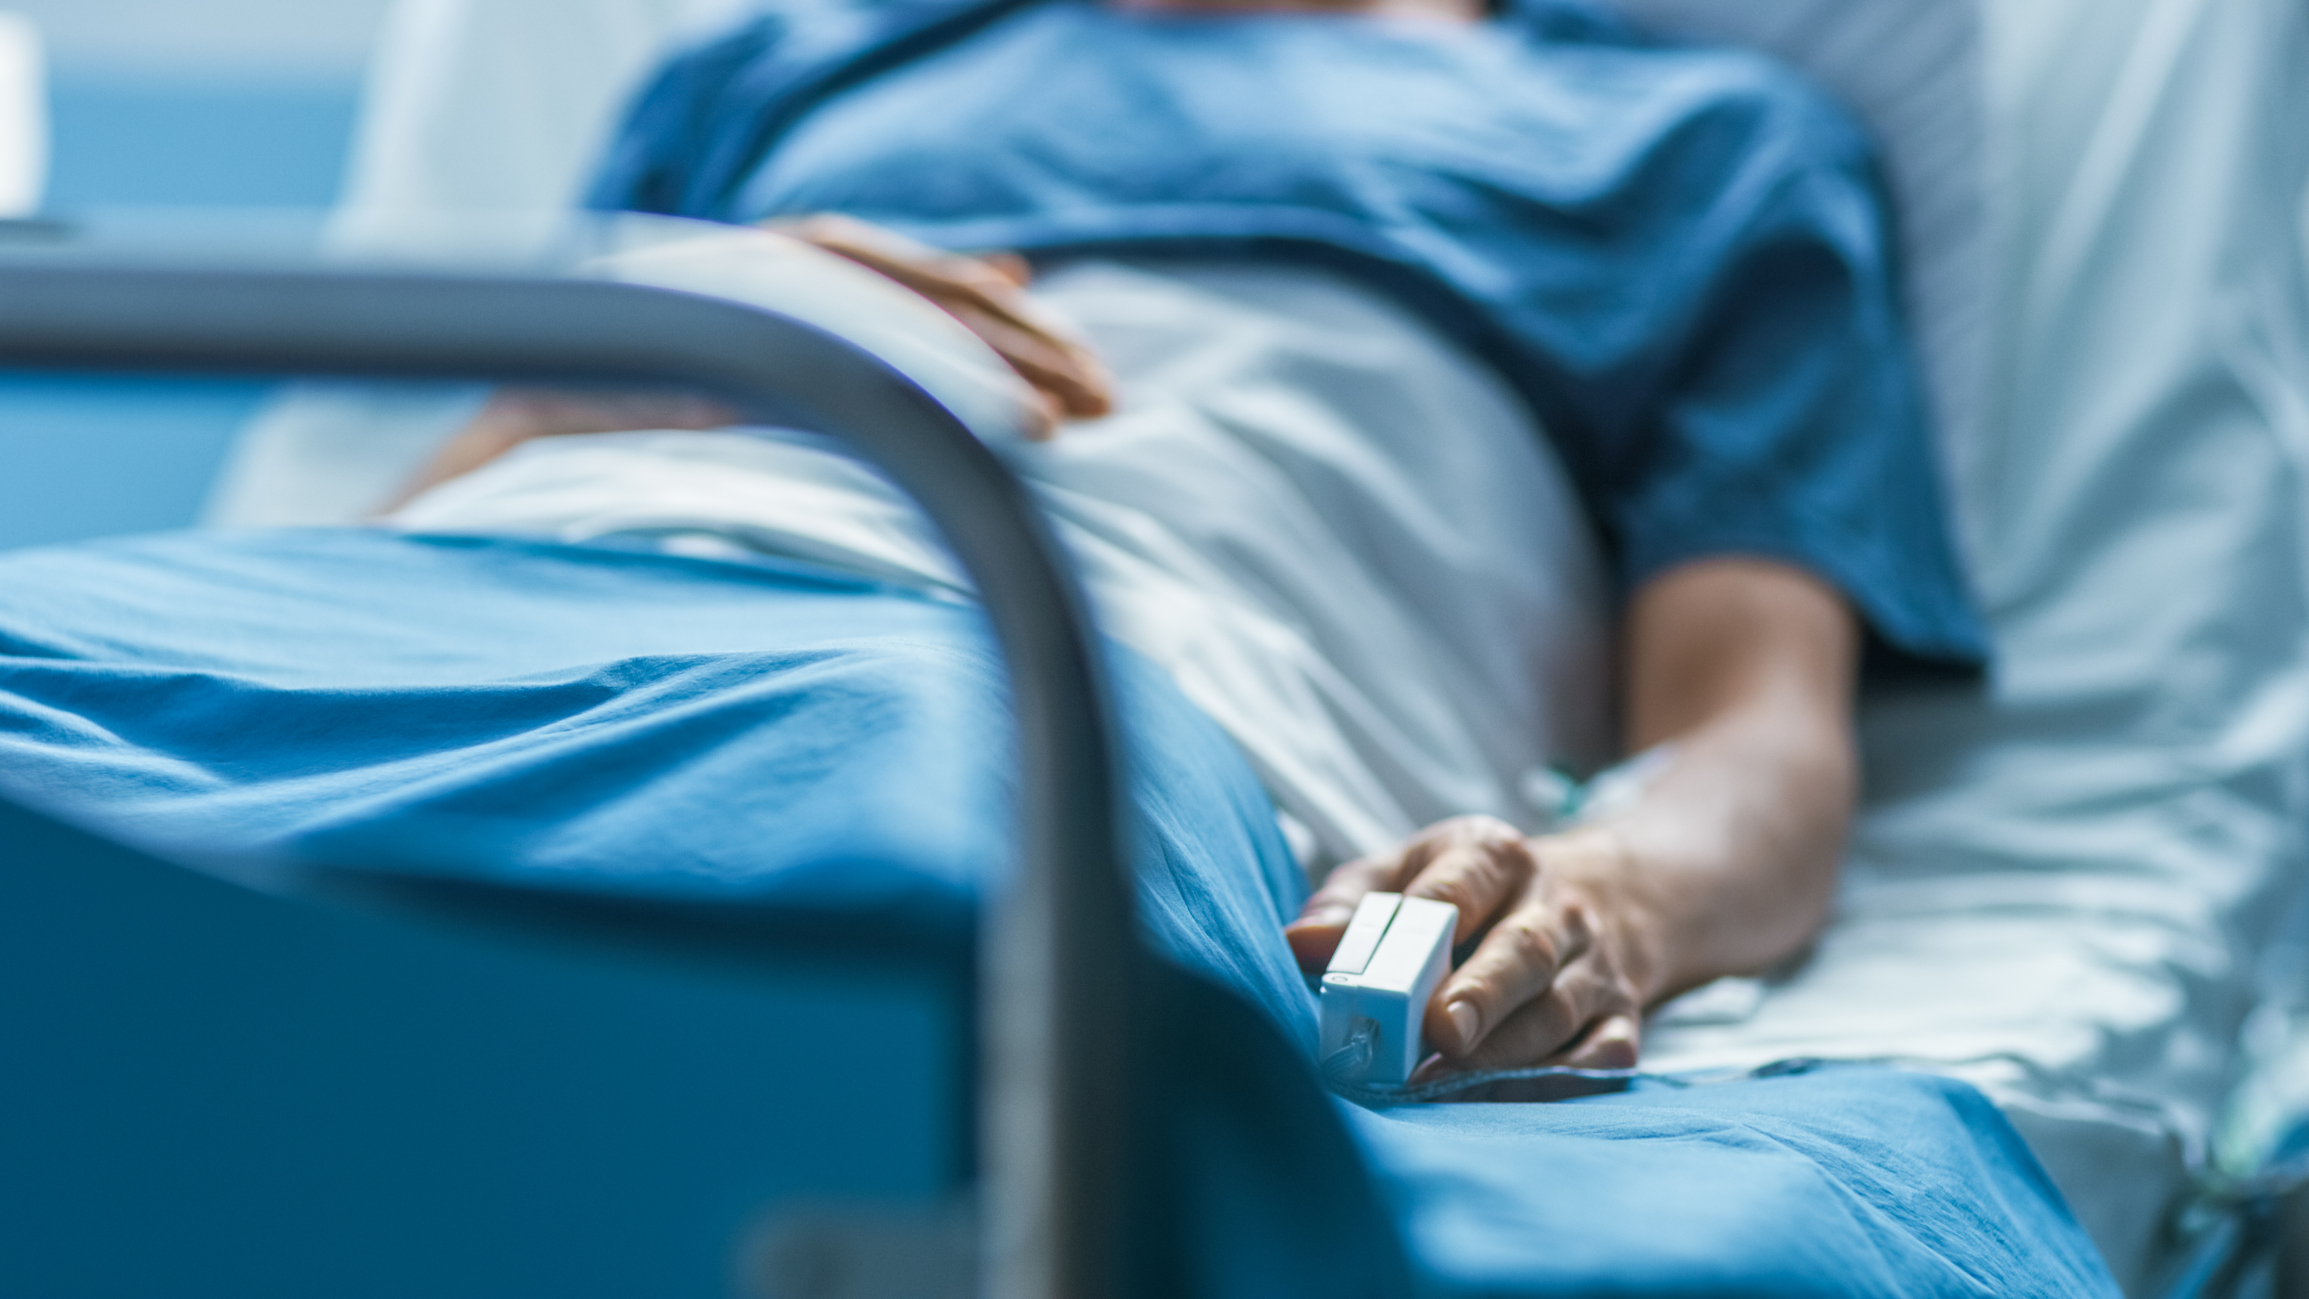 Pessoa deixada em uma cama de hospital com um pregador de oxímetro no dedo.